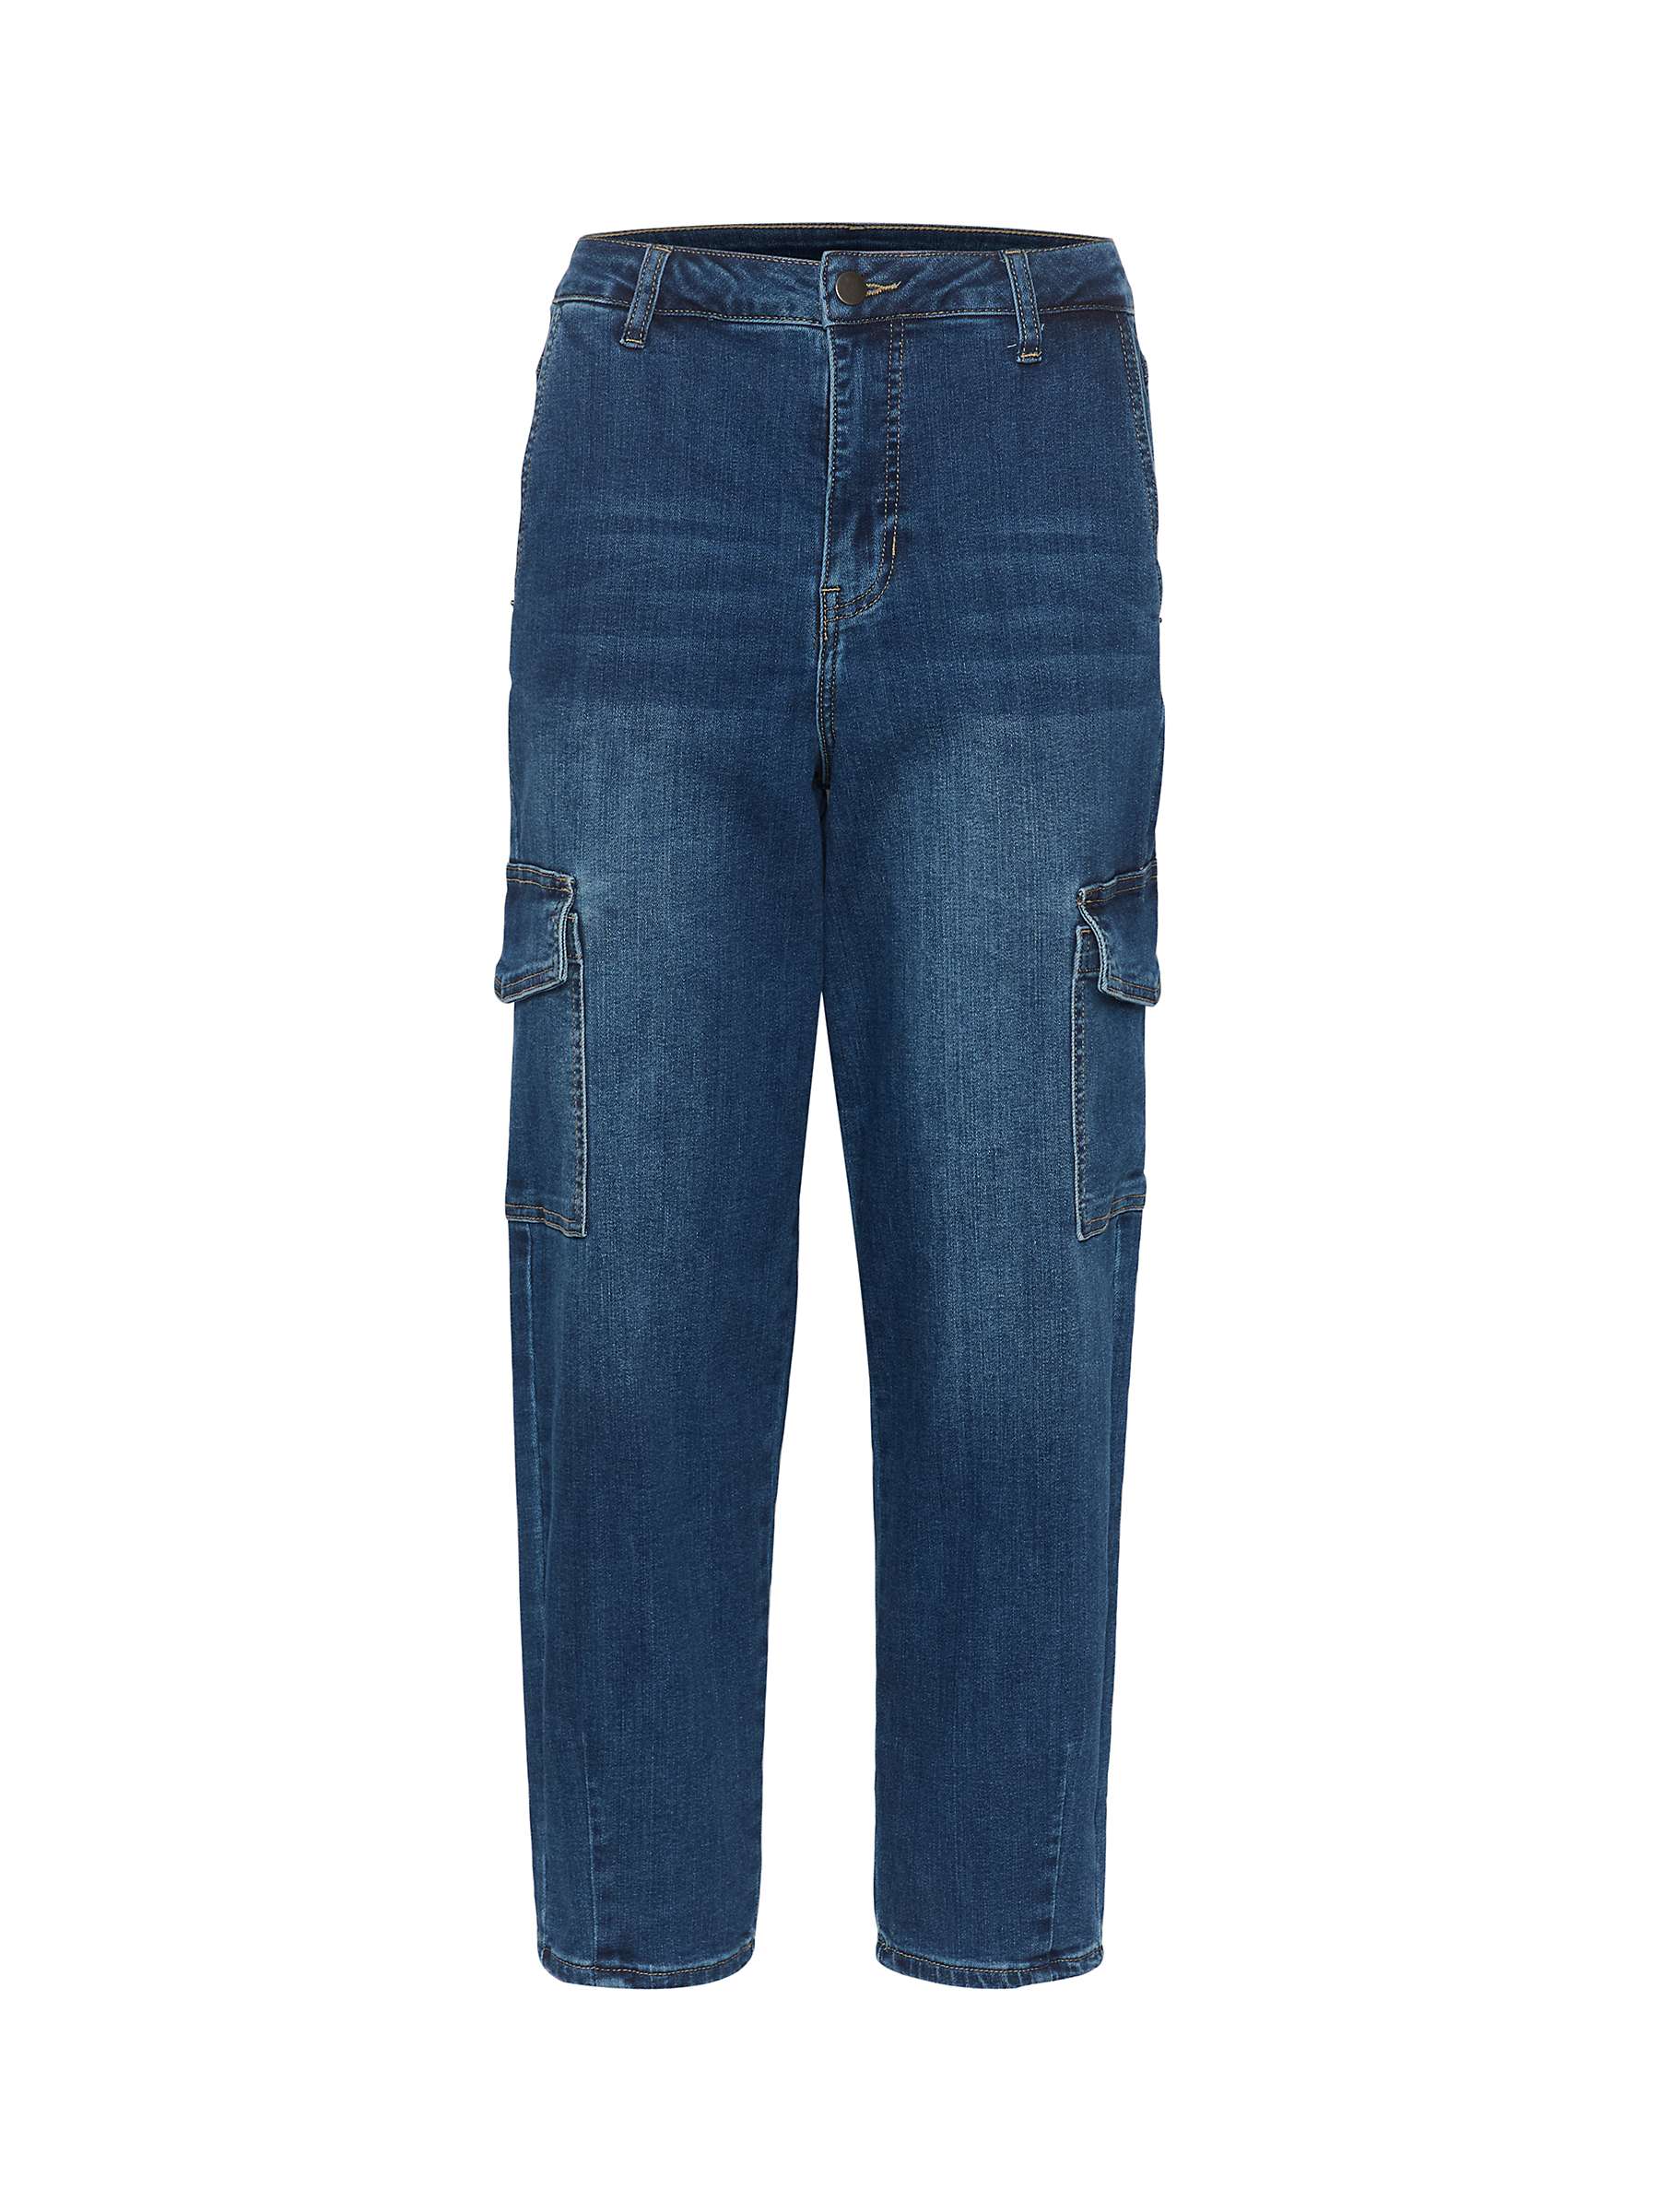 Buy KAFFE Sinem Crop Jeans, Medium Blue Denim Online at johnlewis.com